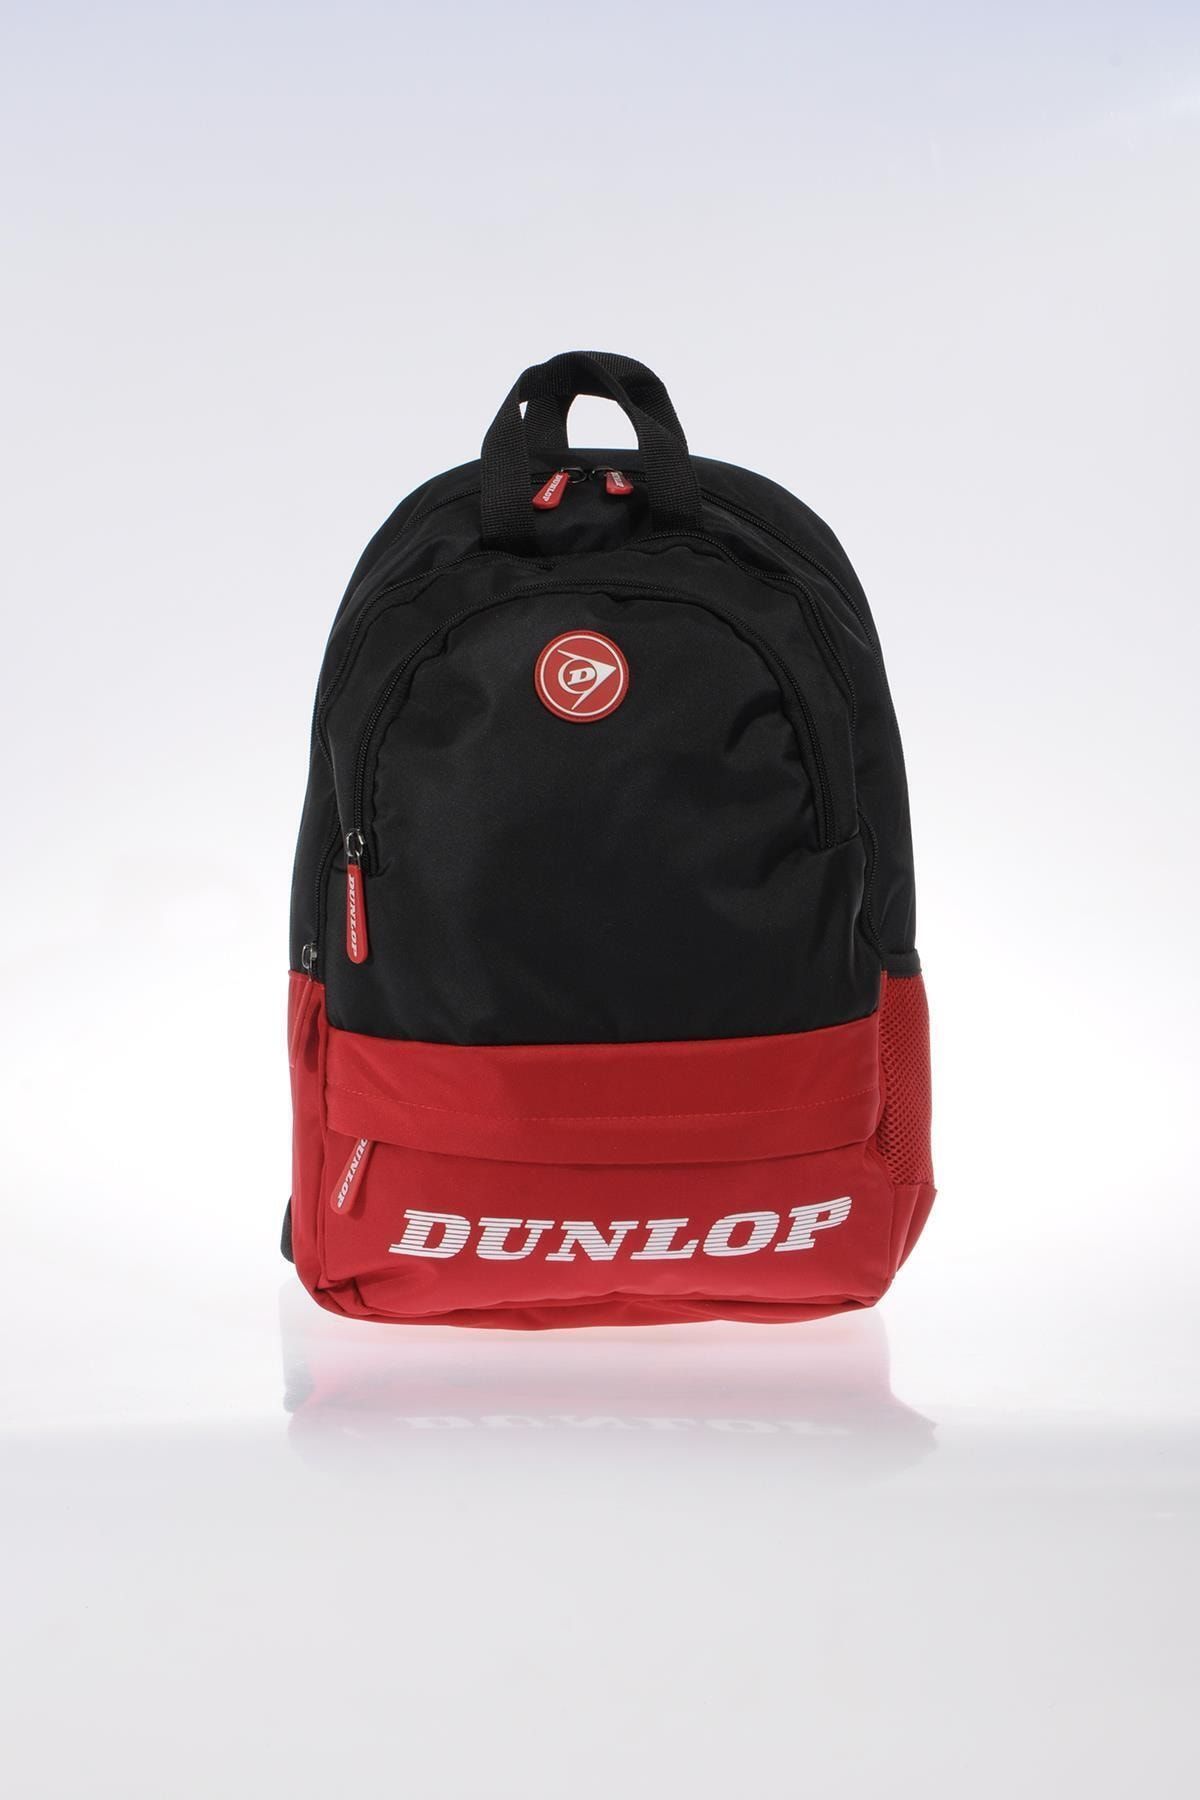 Dunlop Siyah Kırmızı Unisex Sırt Çantası DPÇAN9481